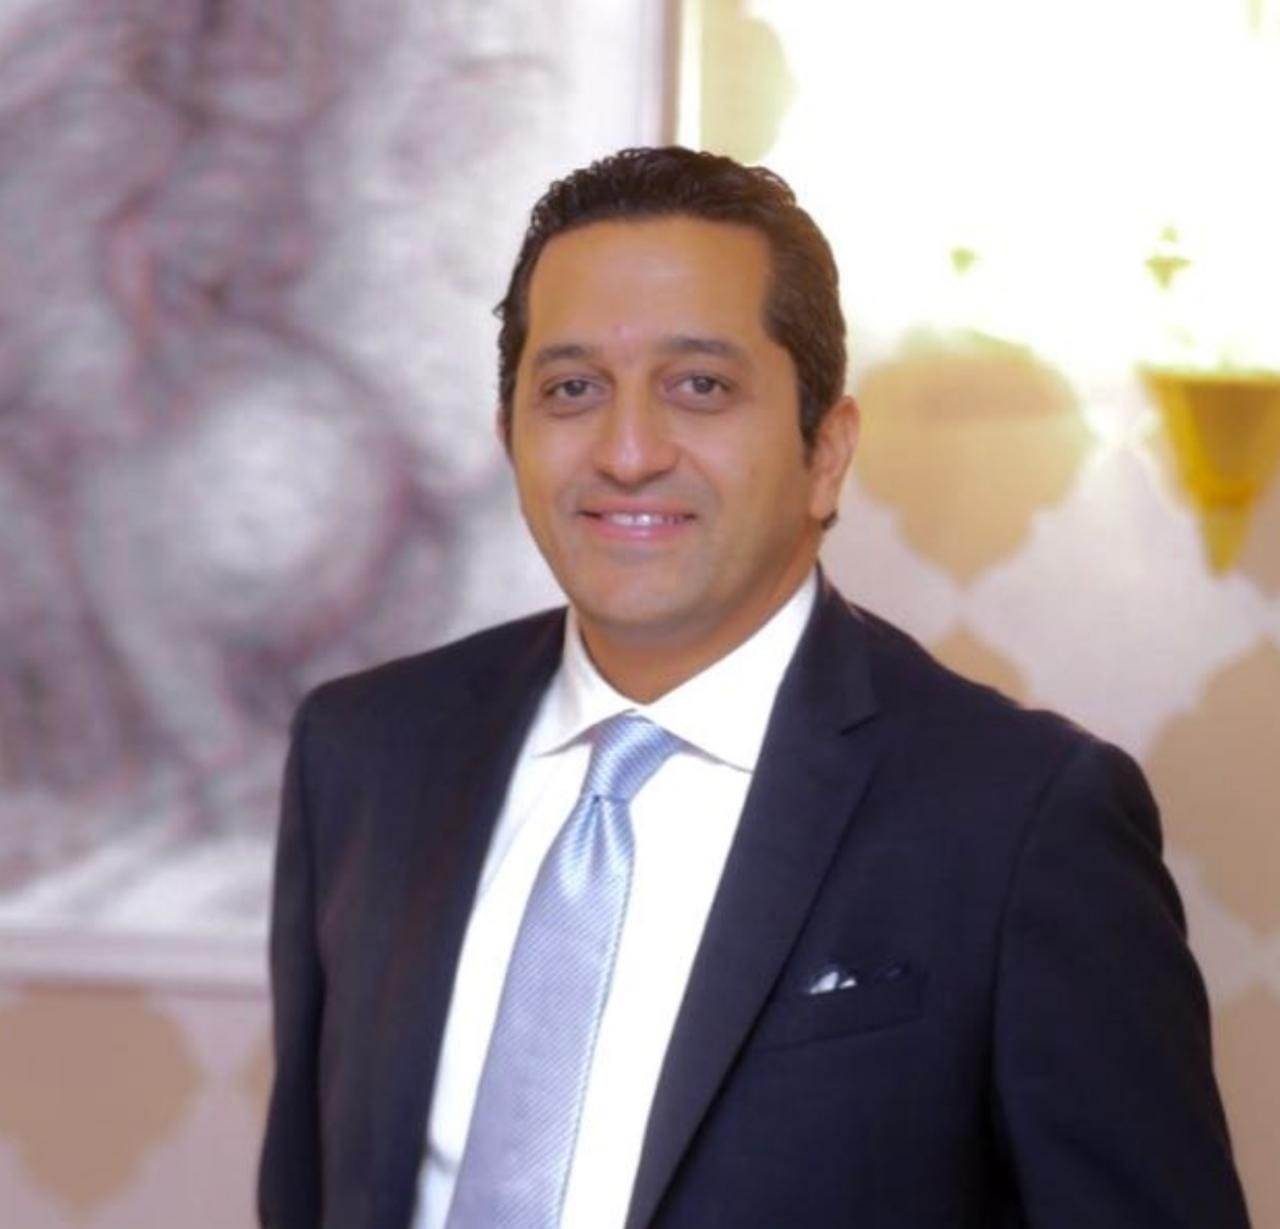  الدكتور  باسم كليلة ، رئيس مجلس إدارة شركة إكسبو ريبابلك لتنظيم المعارض